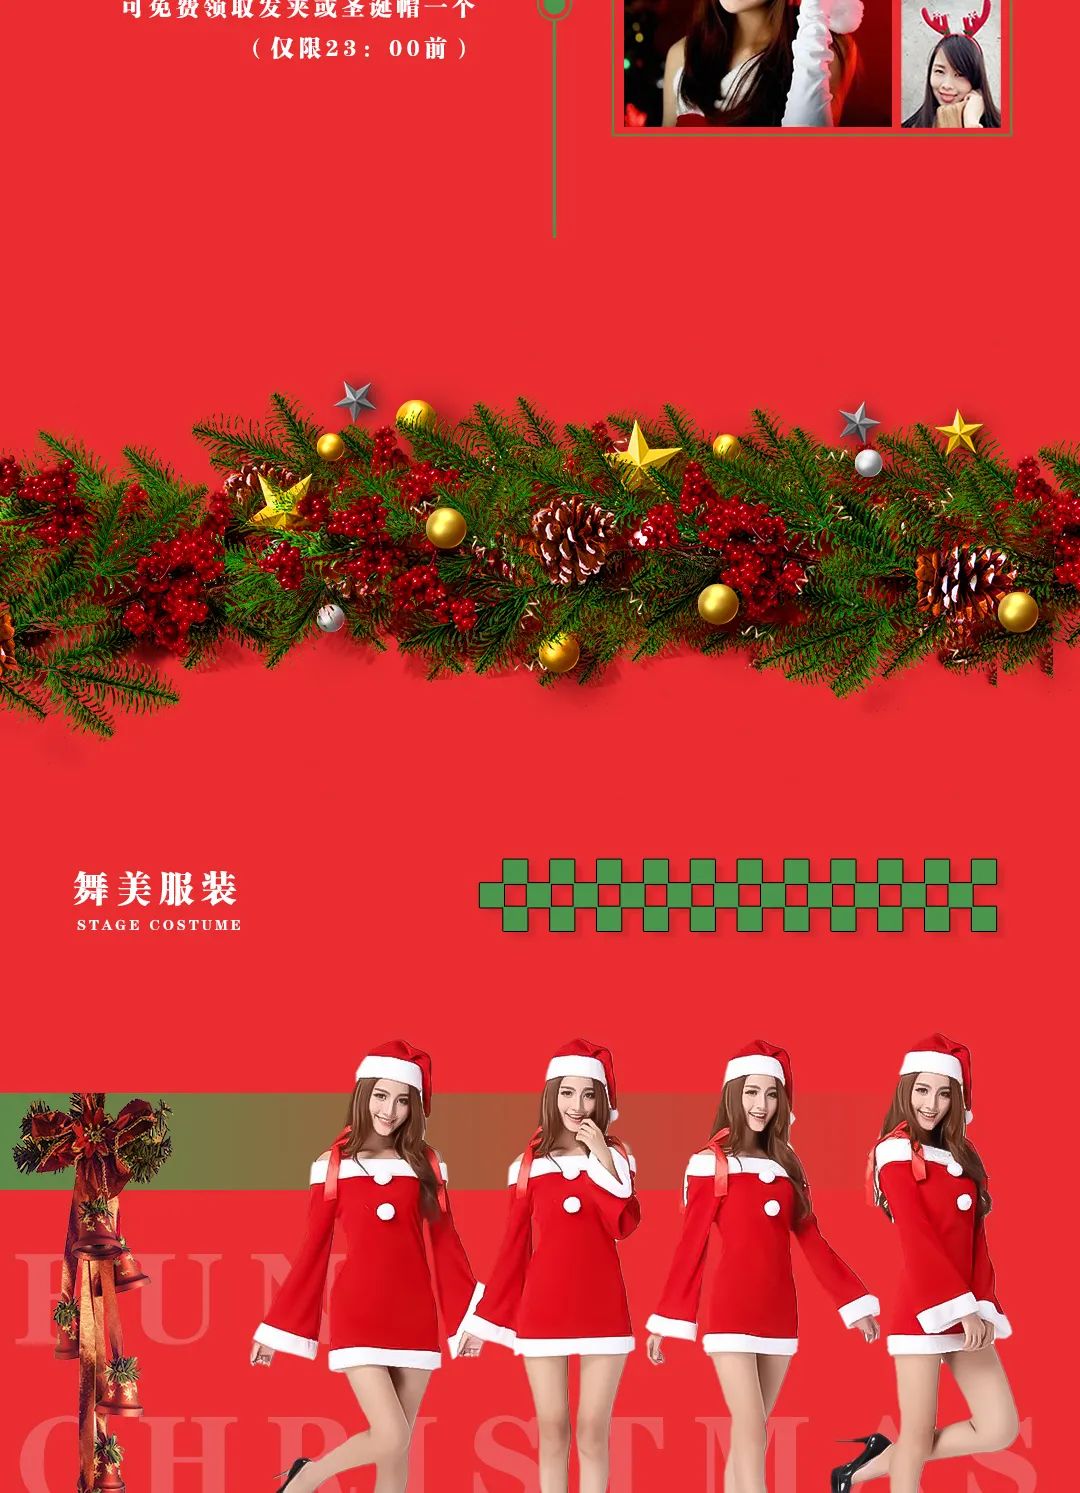 Fun Christmas丨12.24/25 # 圣诞的钟声即将敲响，开启您的专属《圣诞狂欢趴》-绵阳华夏酒吧/HUAXIA CLUB